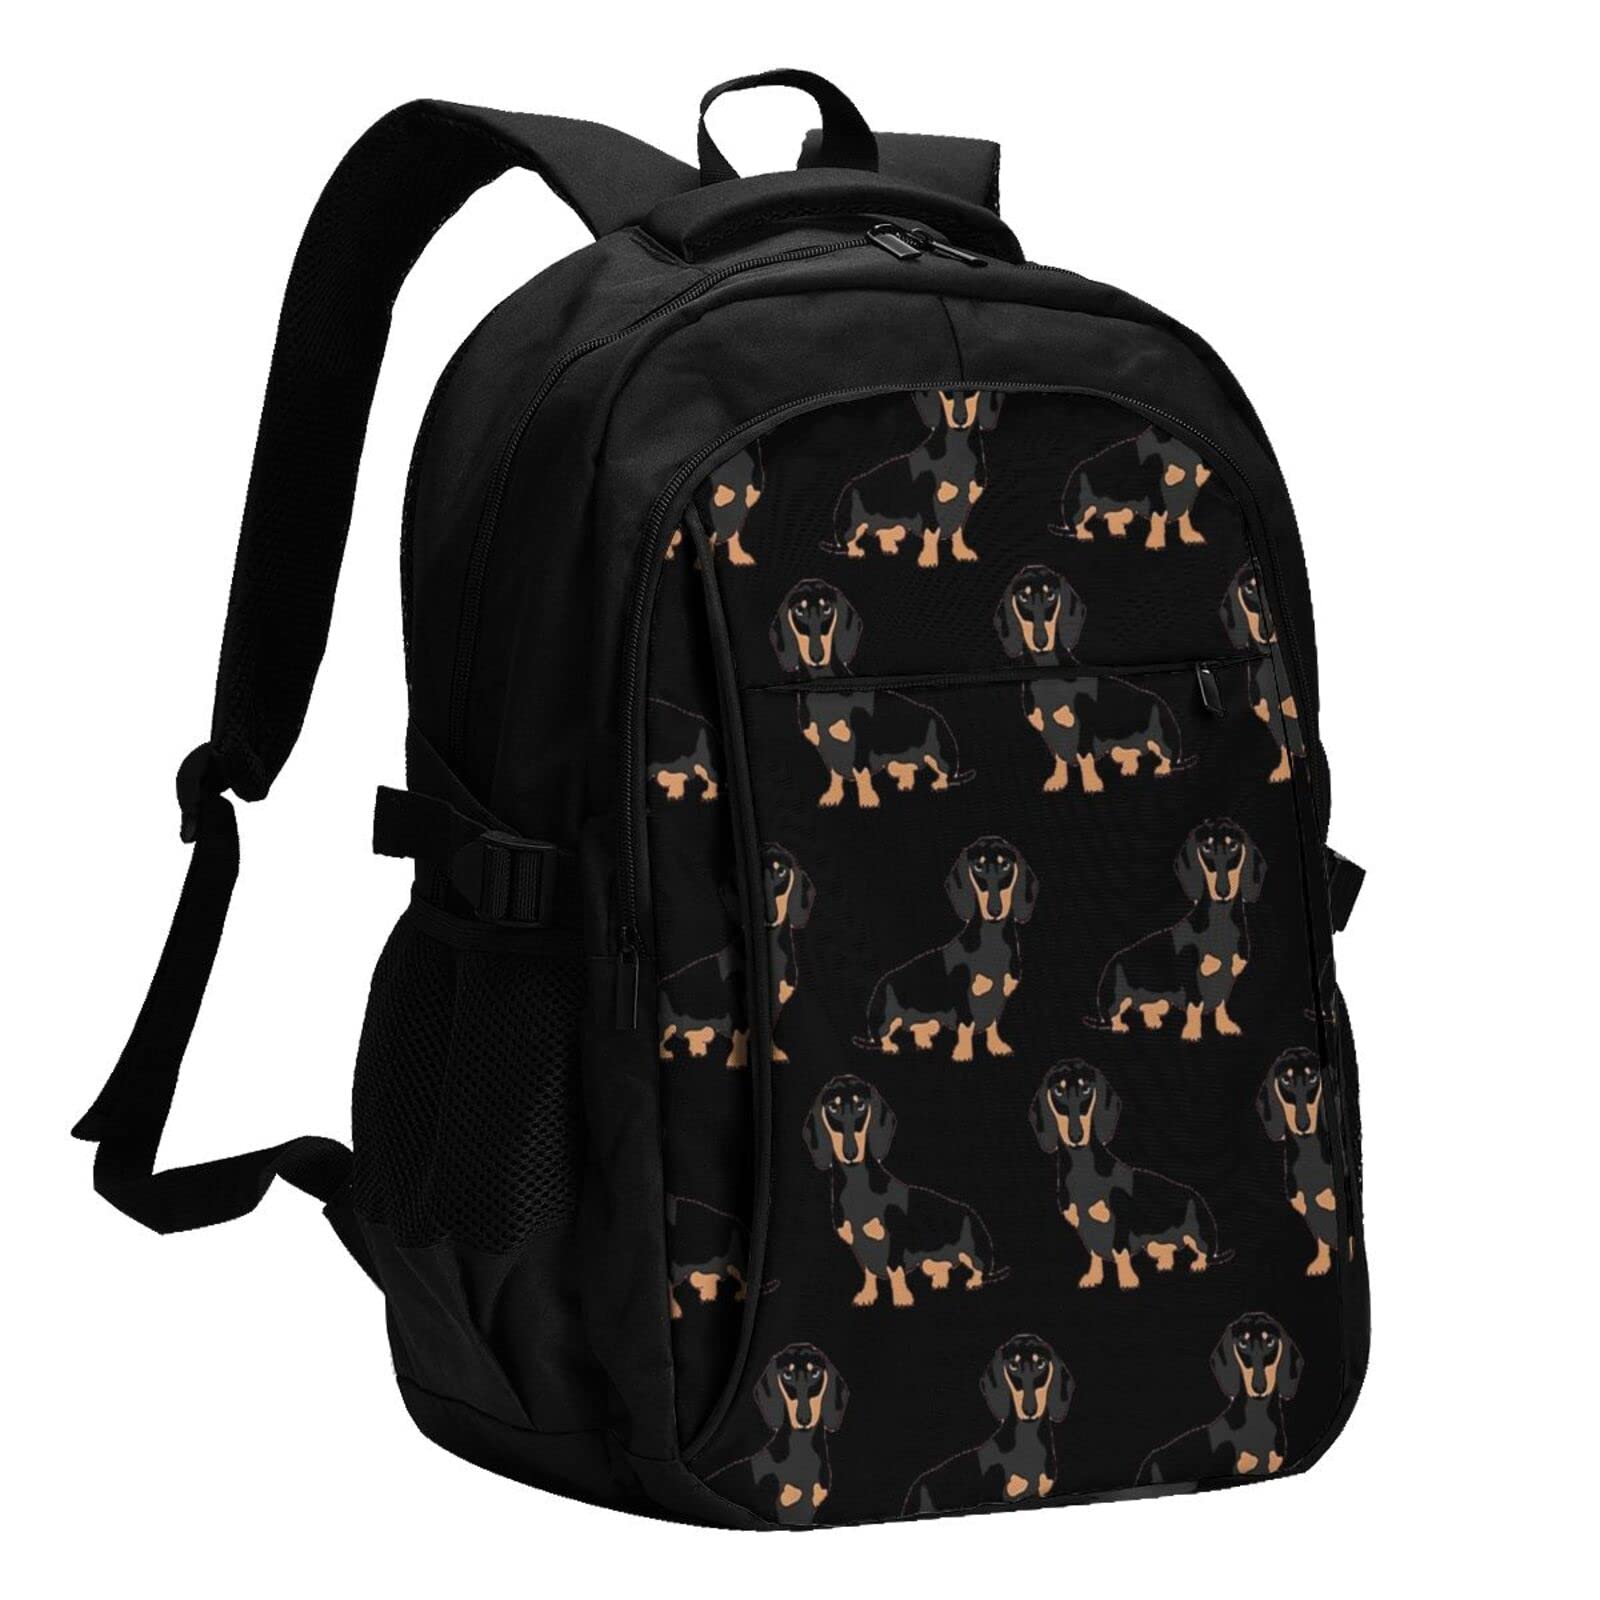 送料無料Dogs Usb Travel Laptop Backpack Water Resistant Casual Daypack Computer Bag Business並行輸入品